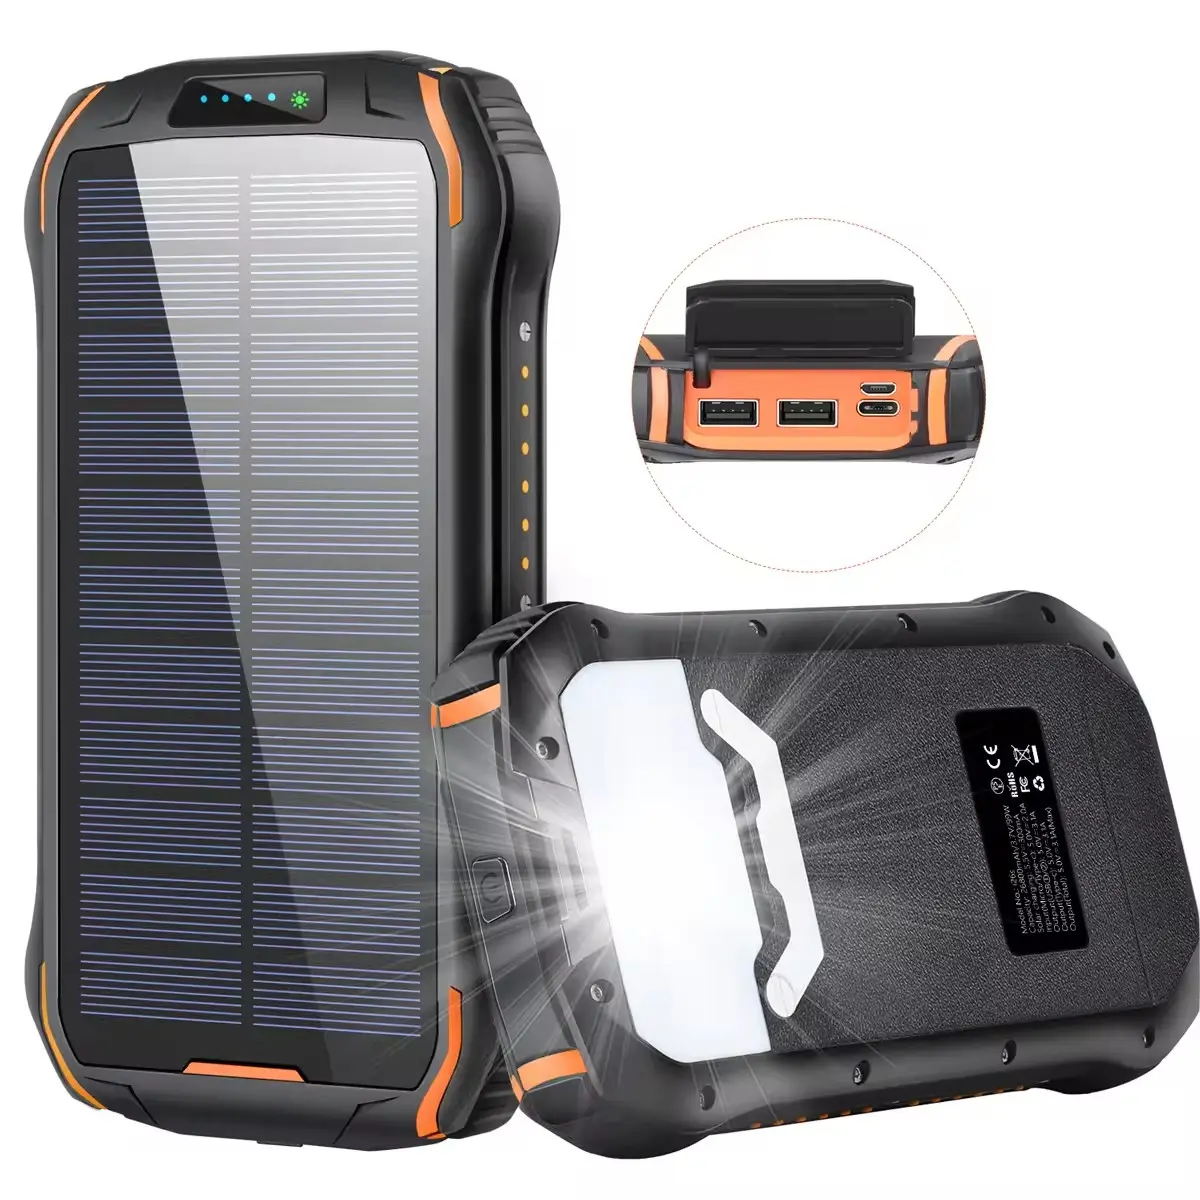 Banca di energia solare caricabatteria portatile 20000mAh caricabatterie solare con DC5V/3.1A USB C carica rapida